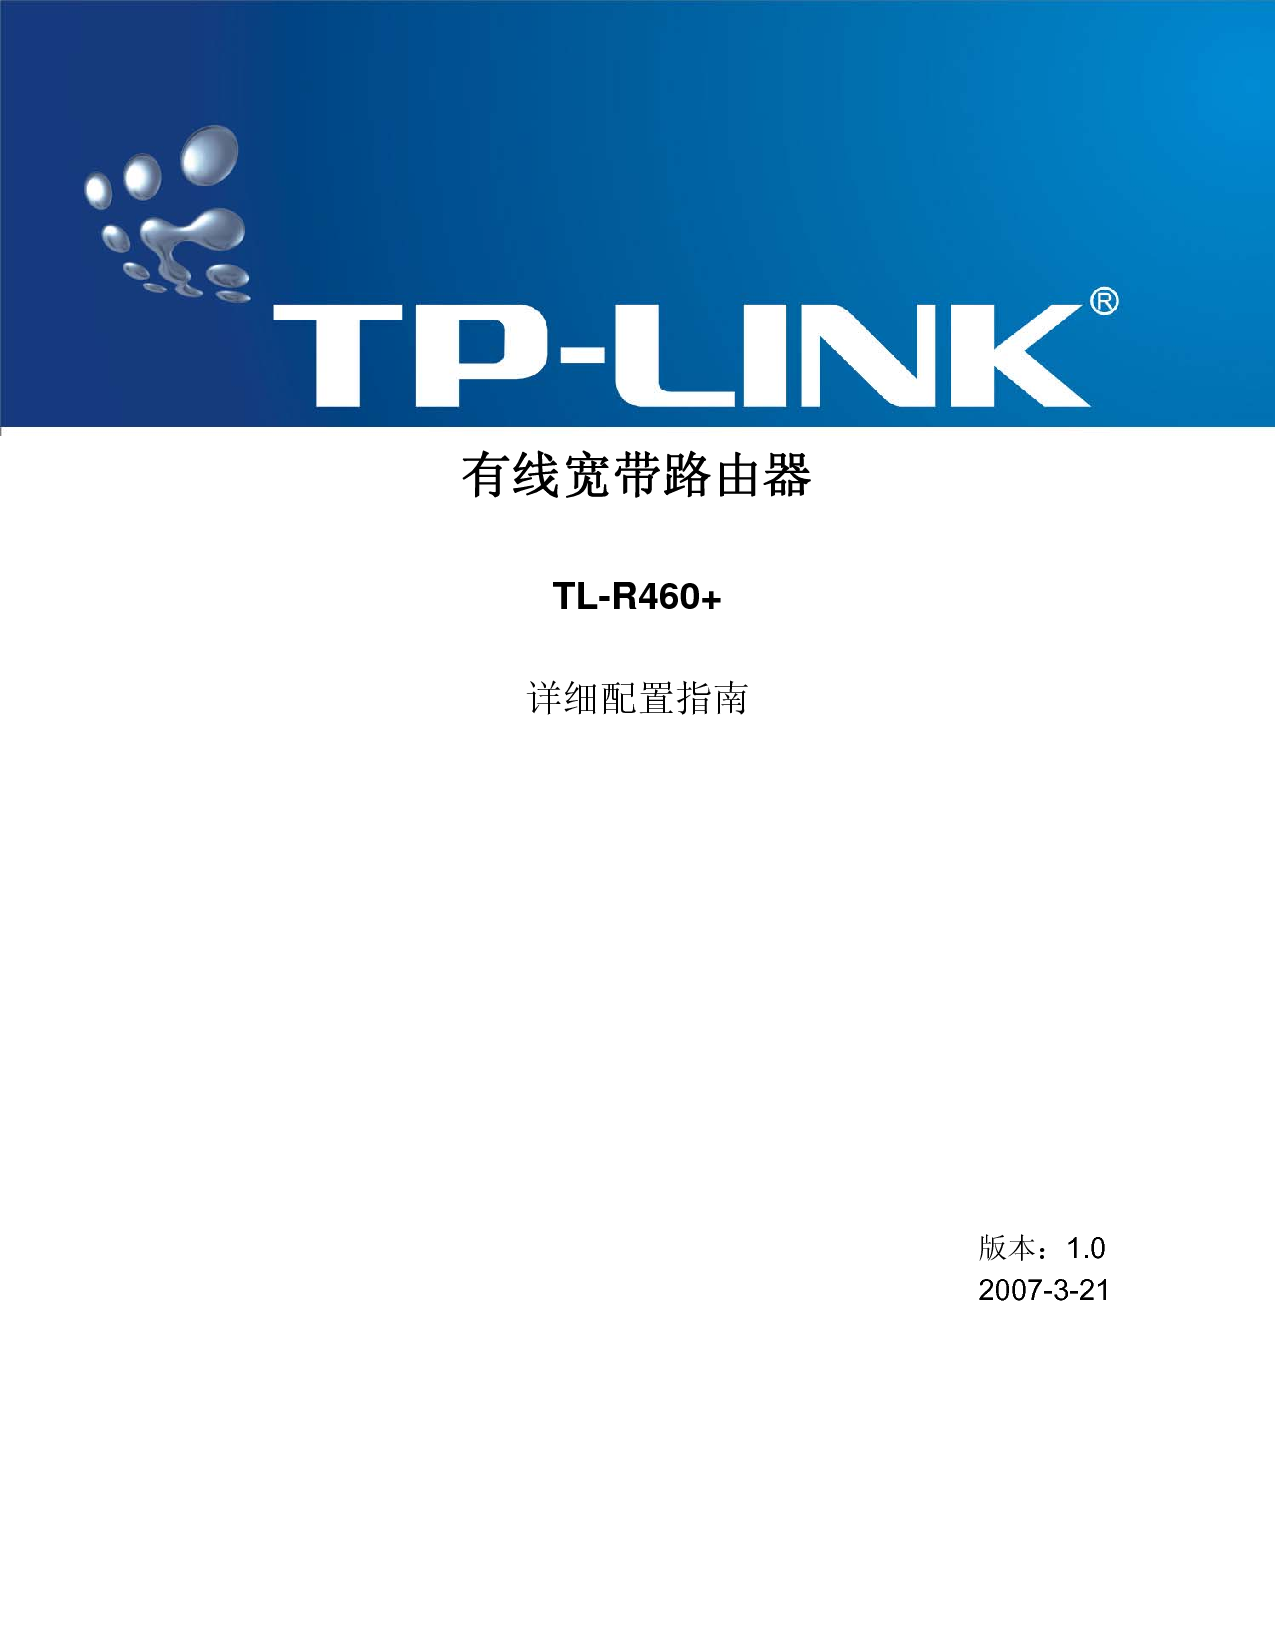 普联 TP-Link TL-R460+ 用户手册 封面